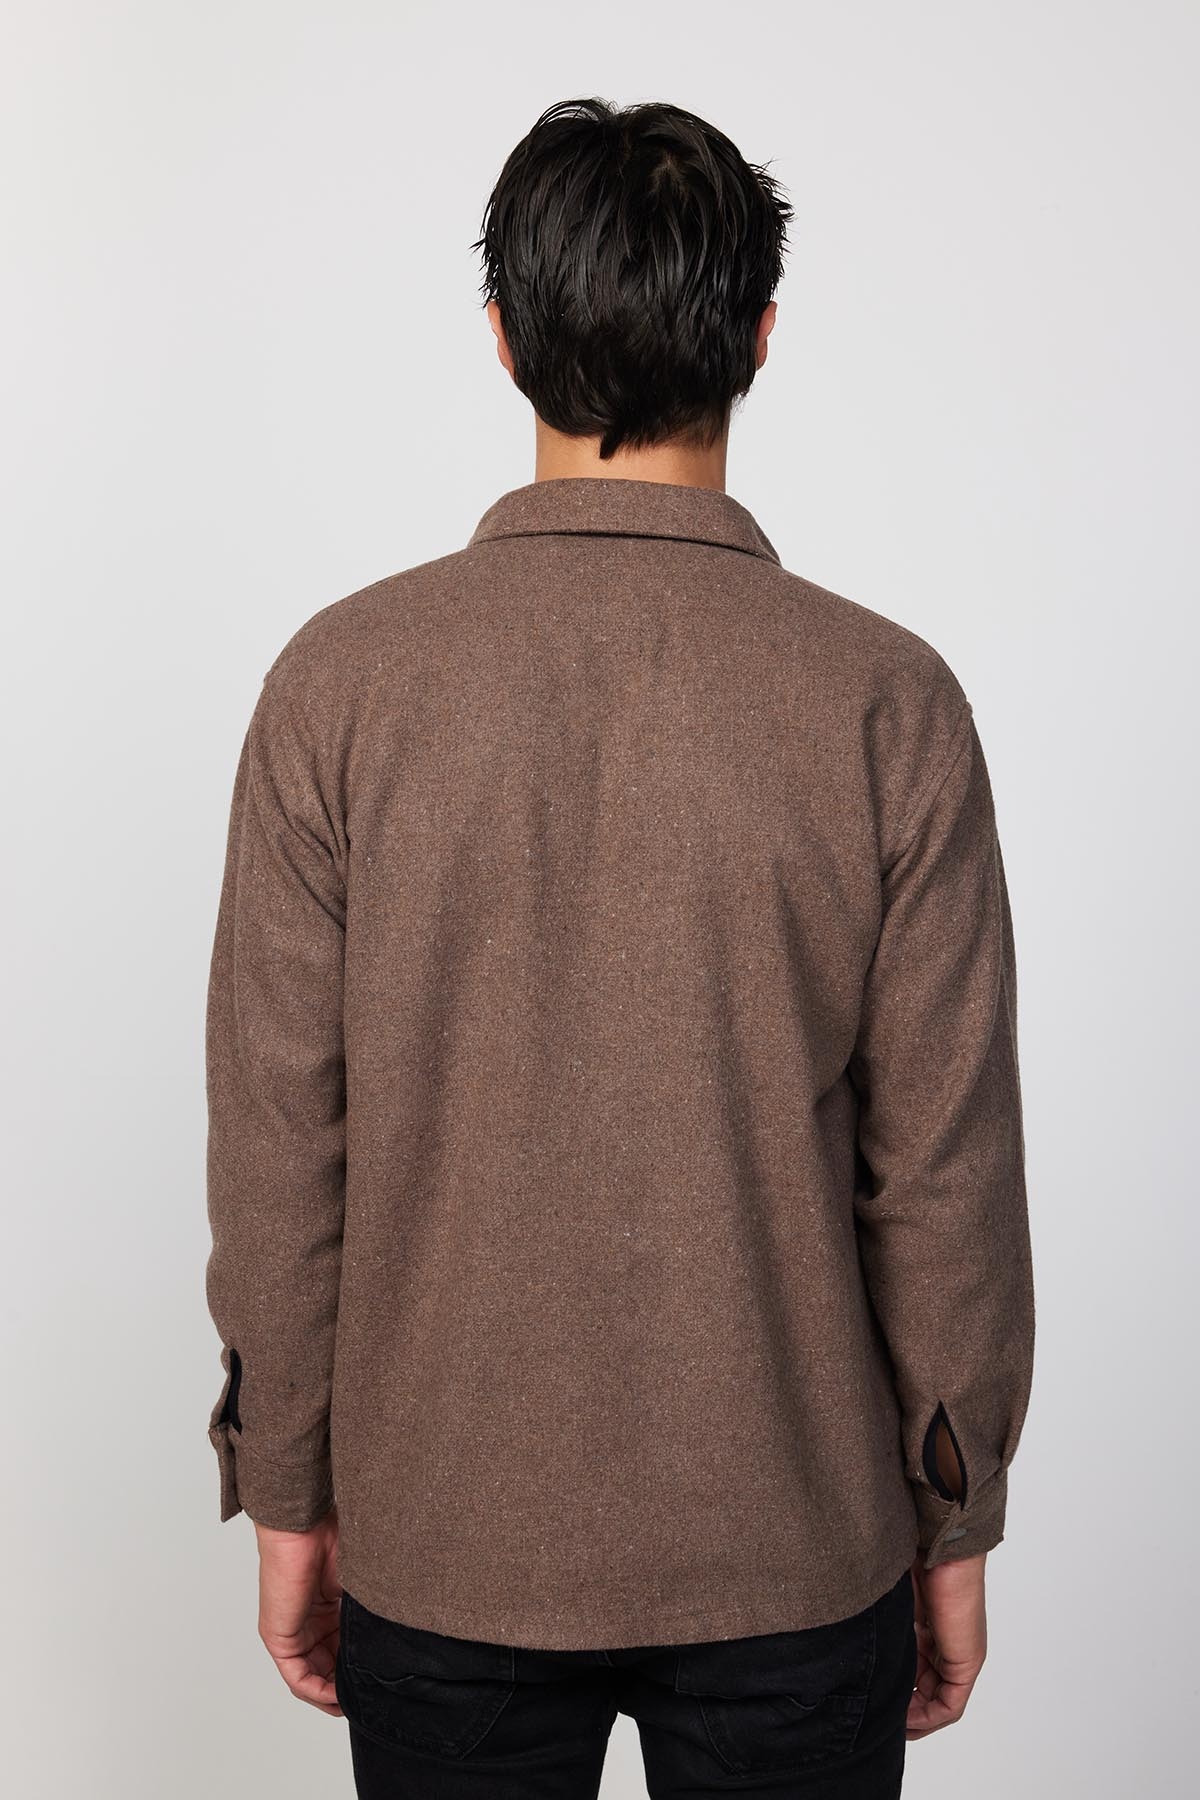 Plain Brown Shirt